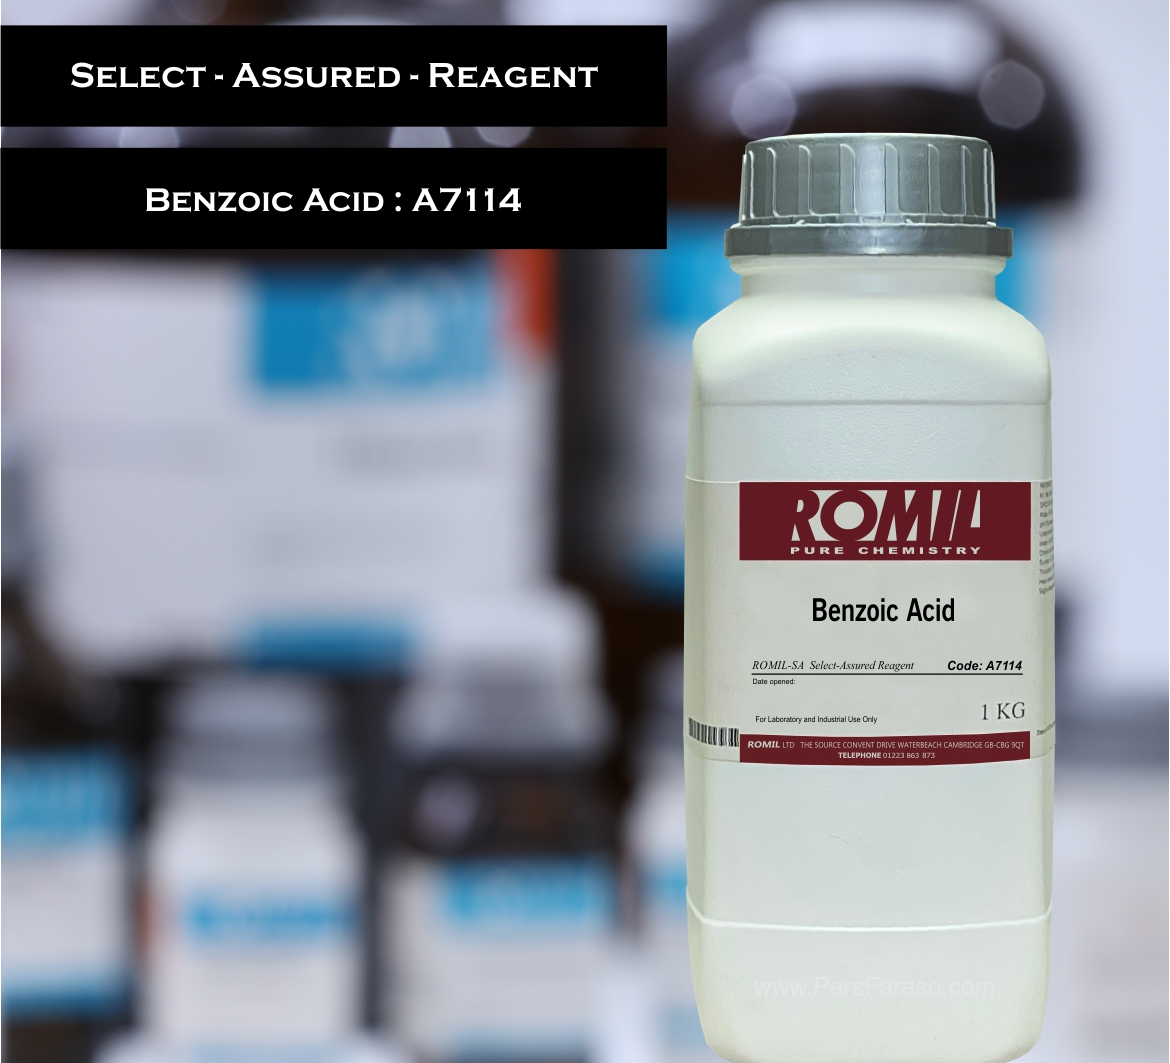 بنزوئیک اسید کد روميل A7114 - قیمت خرید و فروش مواد شیمیایی